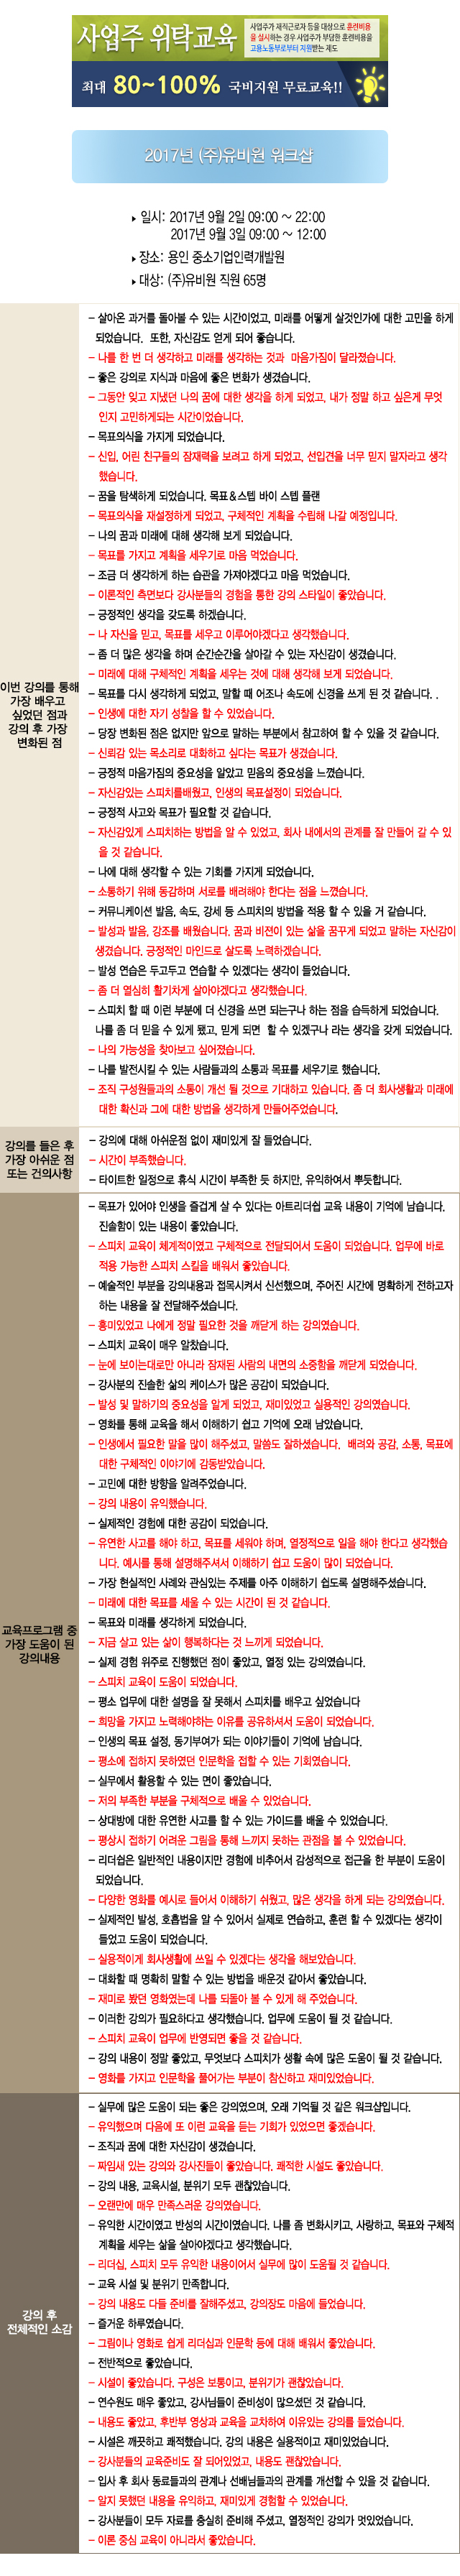 한국중앙인재개발원 후기 유비원.jpg